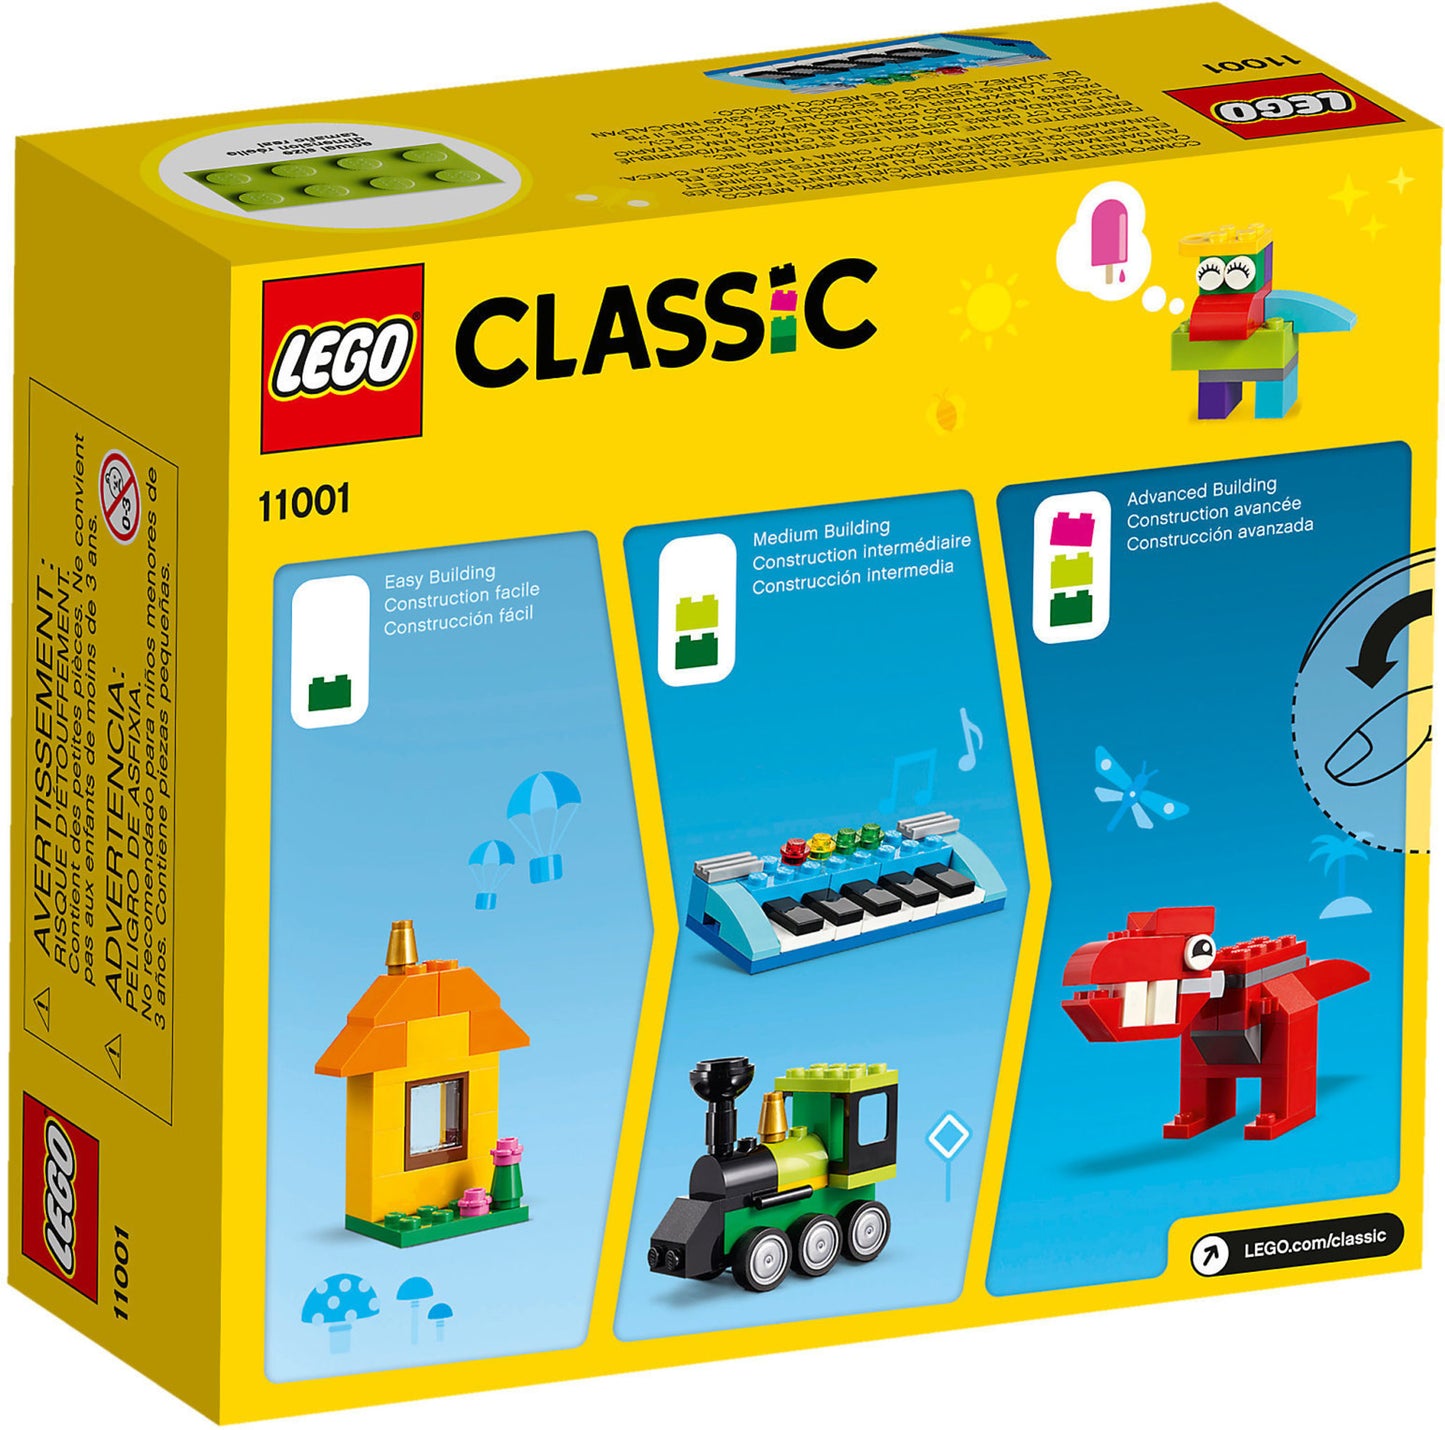 11001 LEGO Classic - Mattoncini E Idee